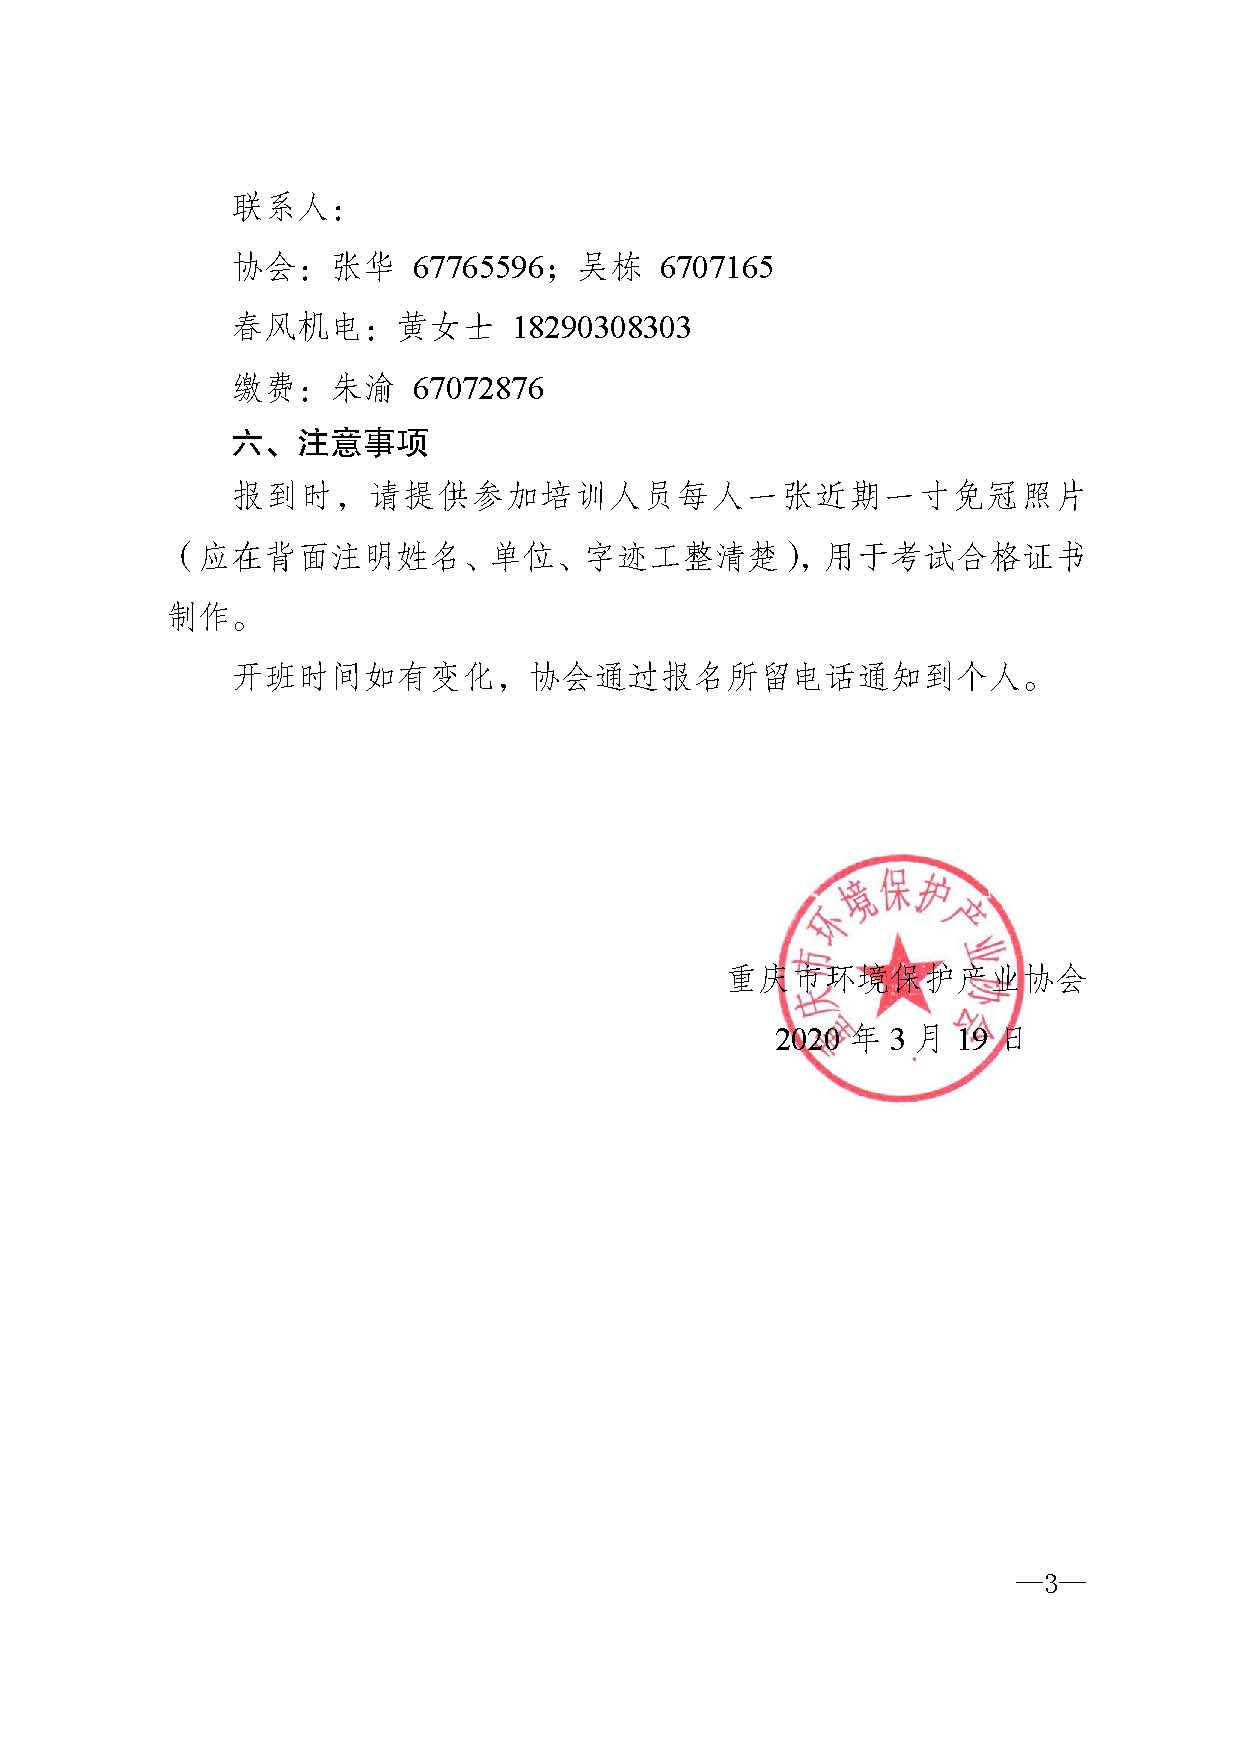 重庆市环境保护产业协会关于举办污水处理机电维修人员技能培训班的通知x_页面_3